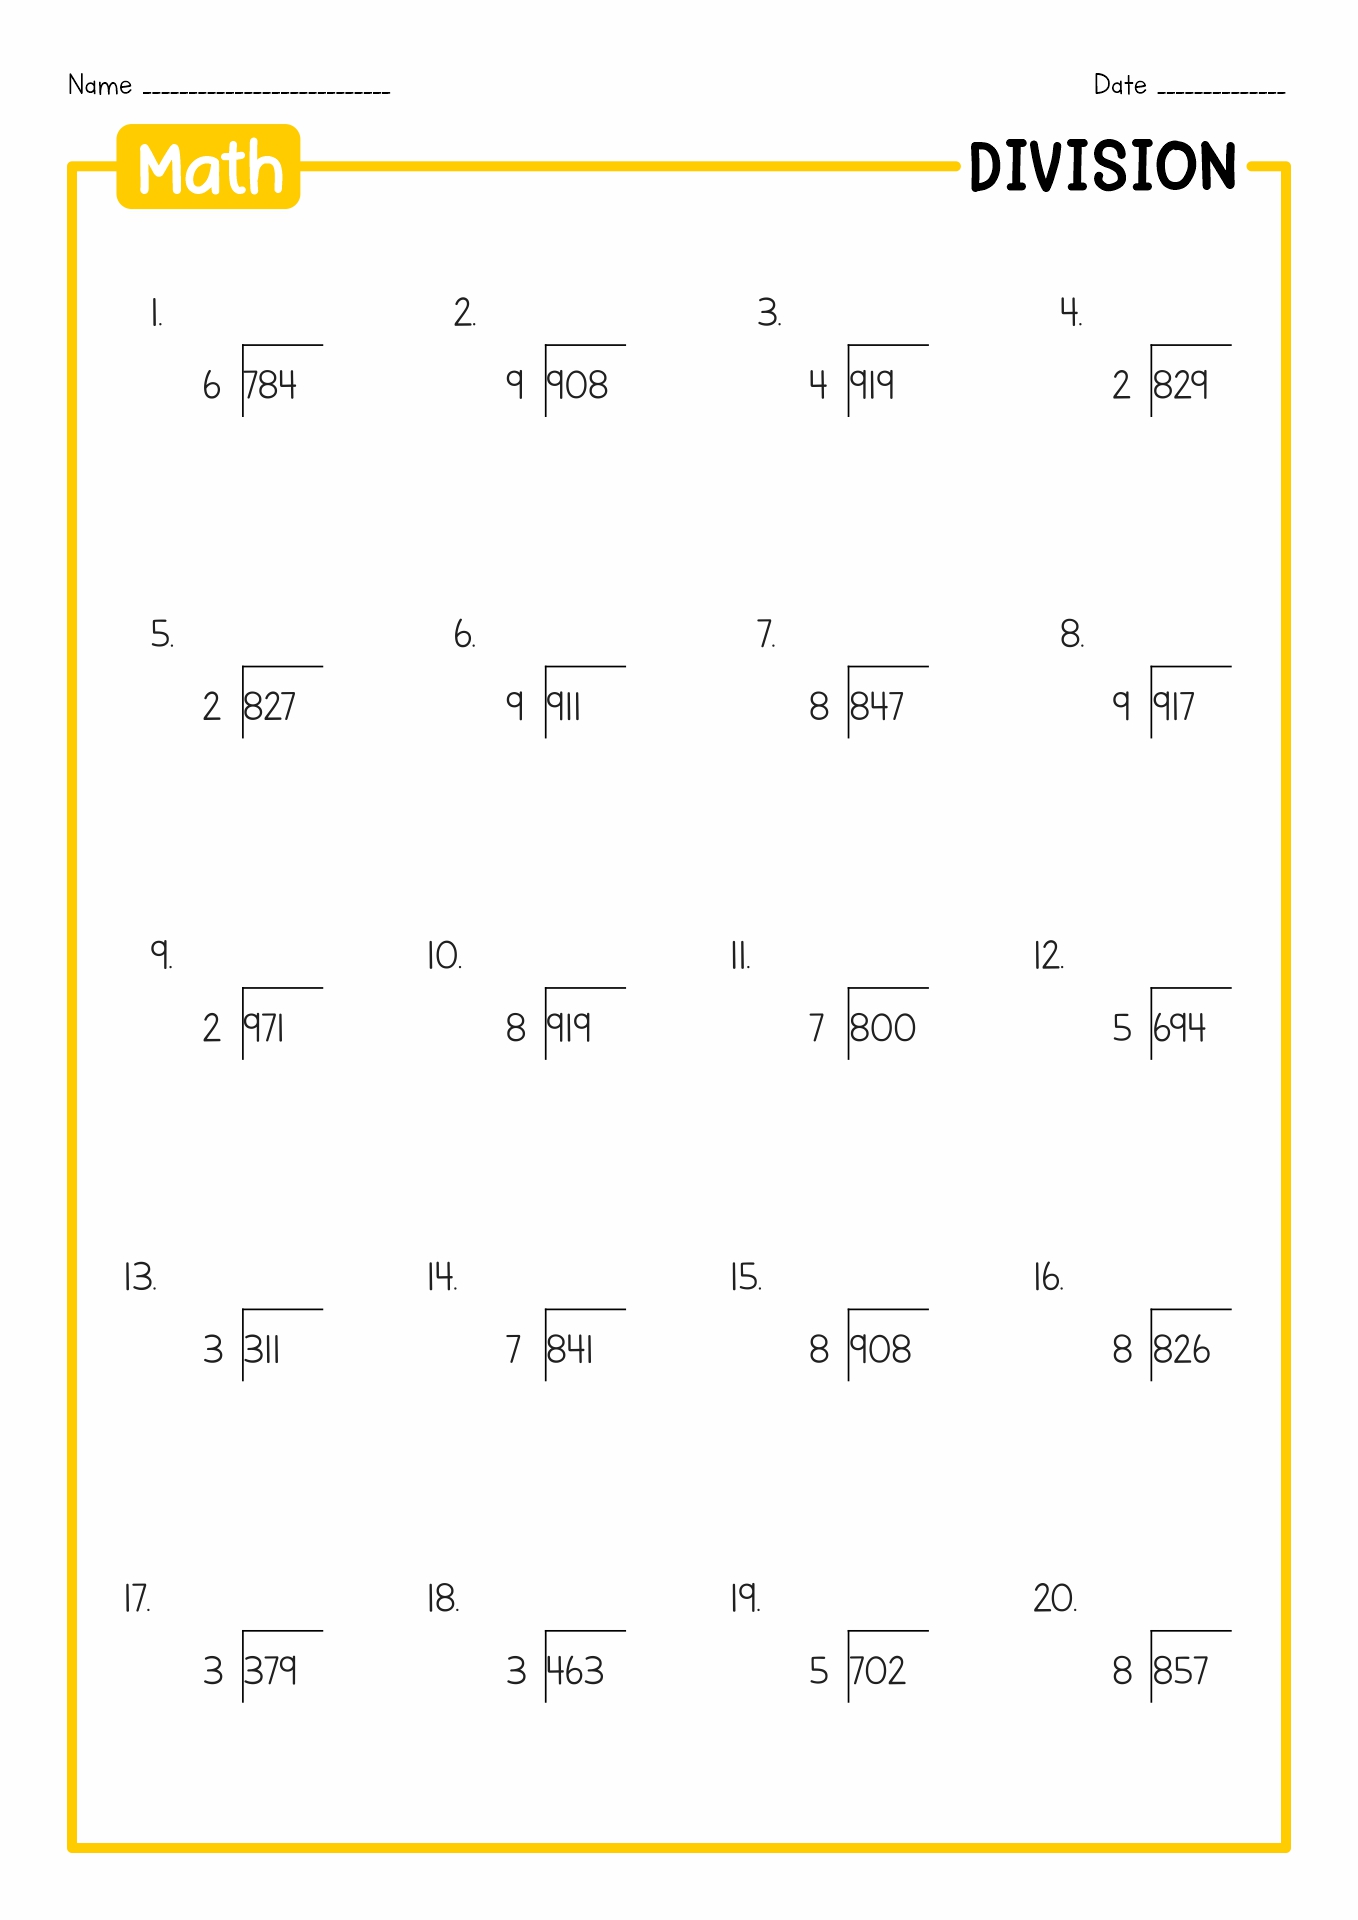 Long Division Worksheets 4th Grade Math Image